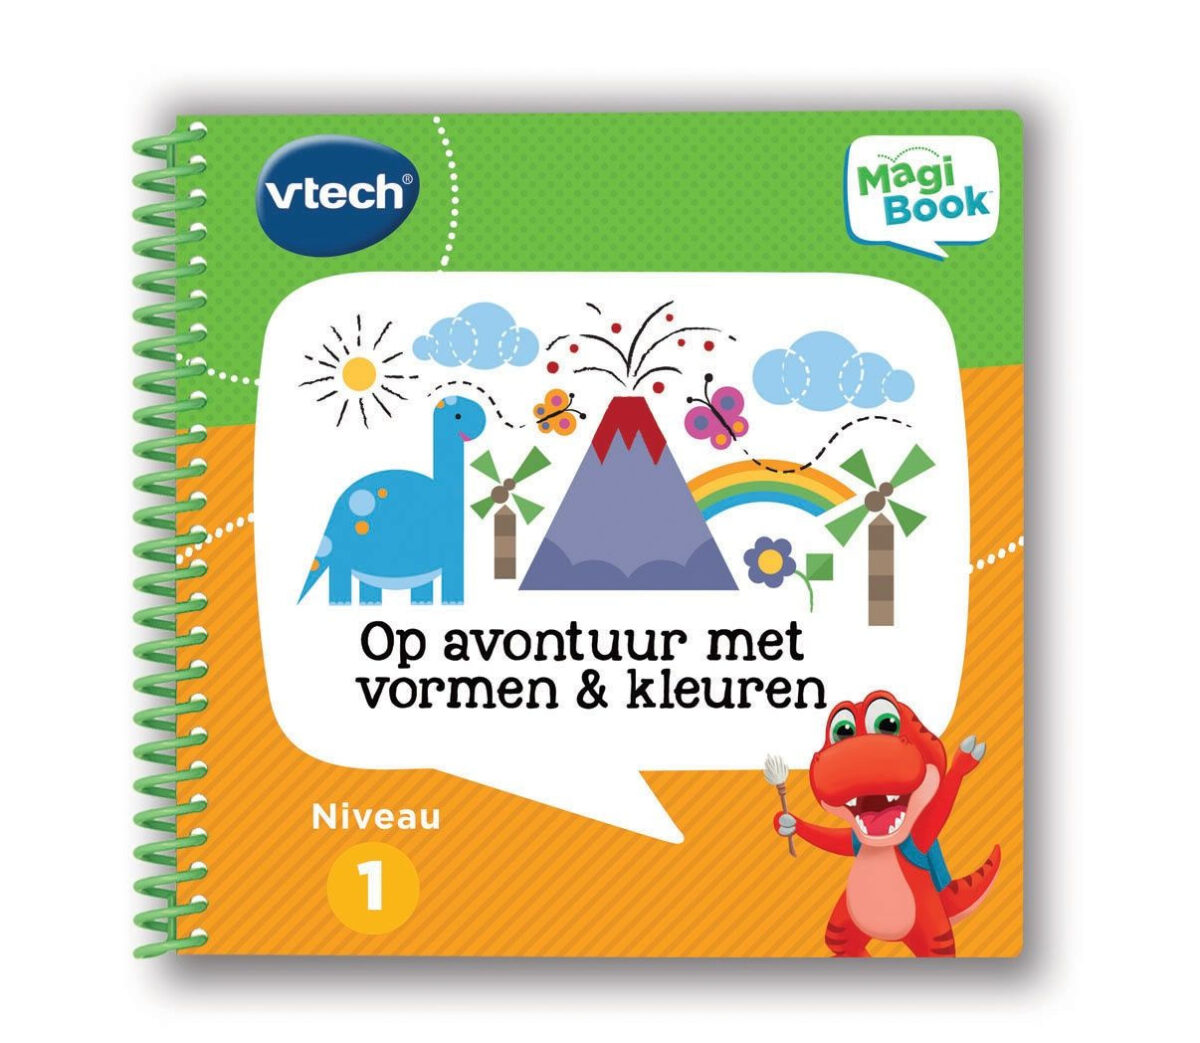 80-480523 Vtech MagiBook - Op avontuur met vormen en kleuren